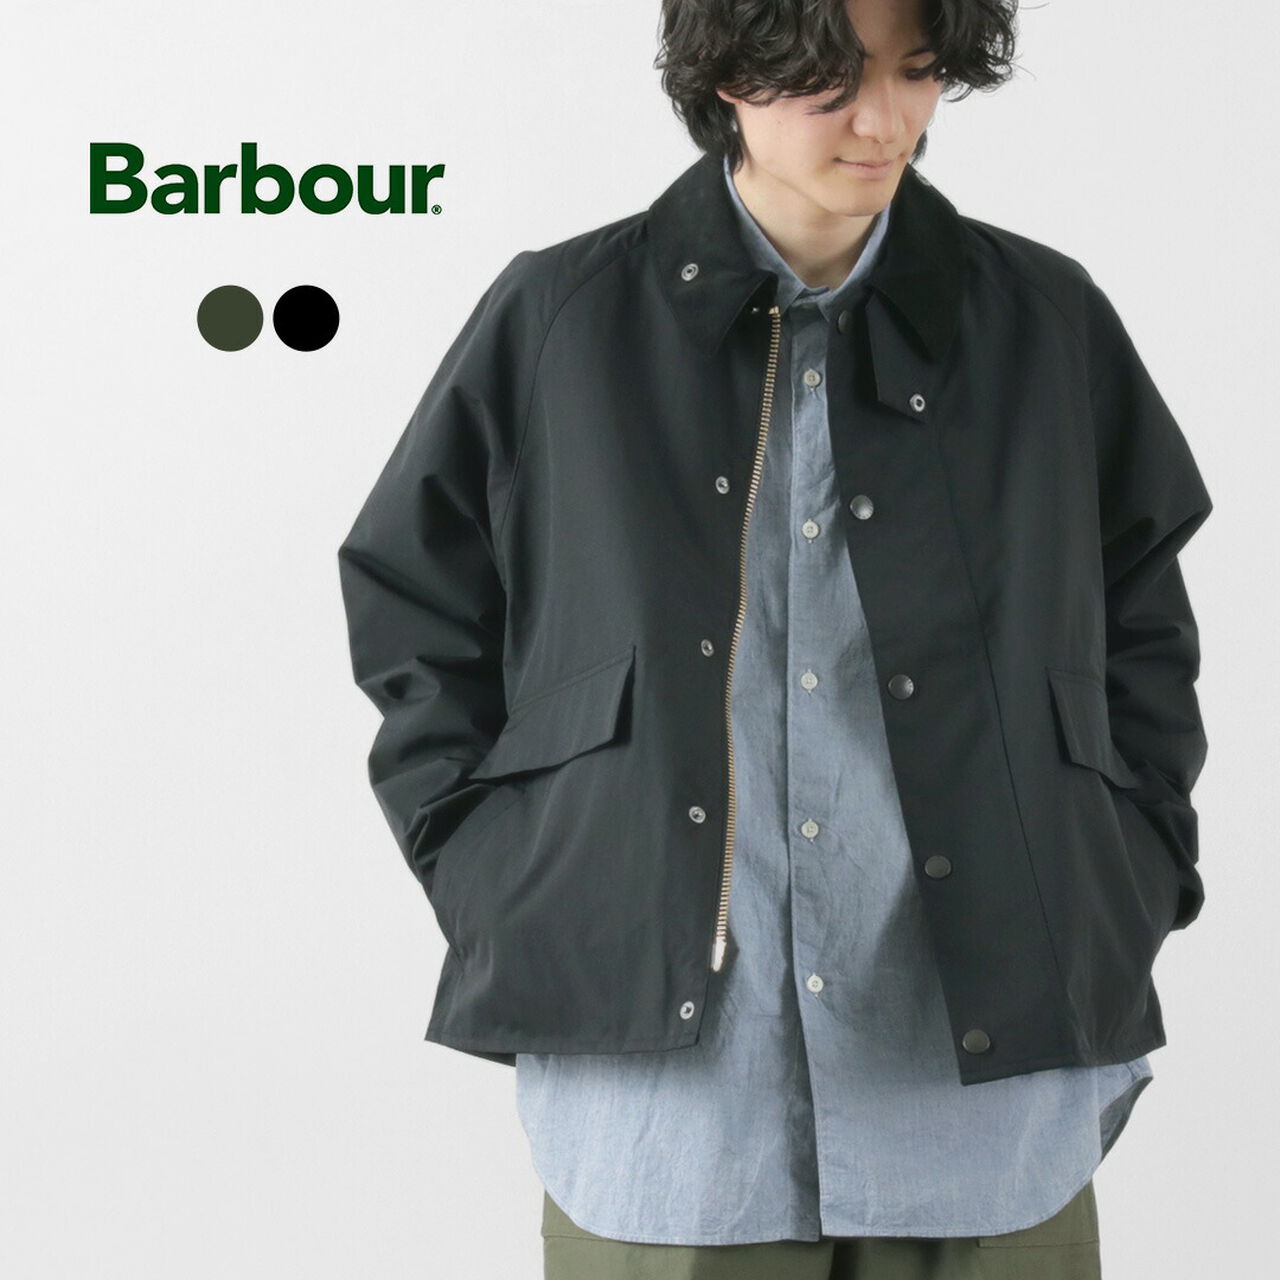 Borrowdale Short Length Jacket,, large image number 1